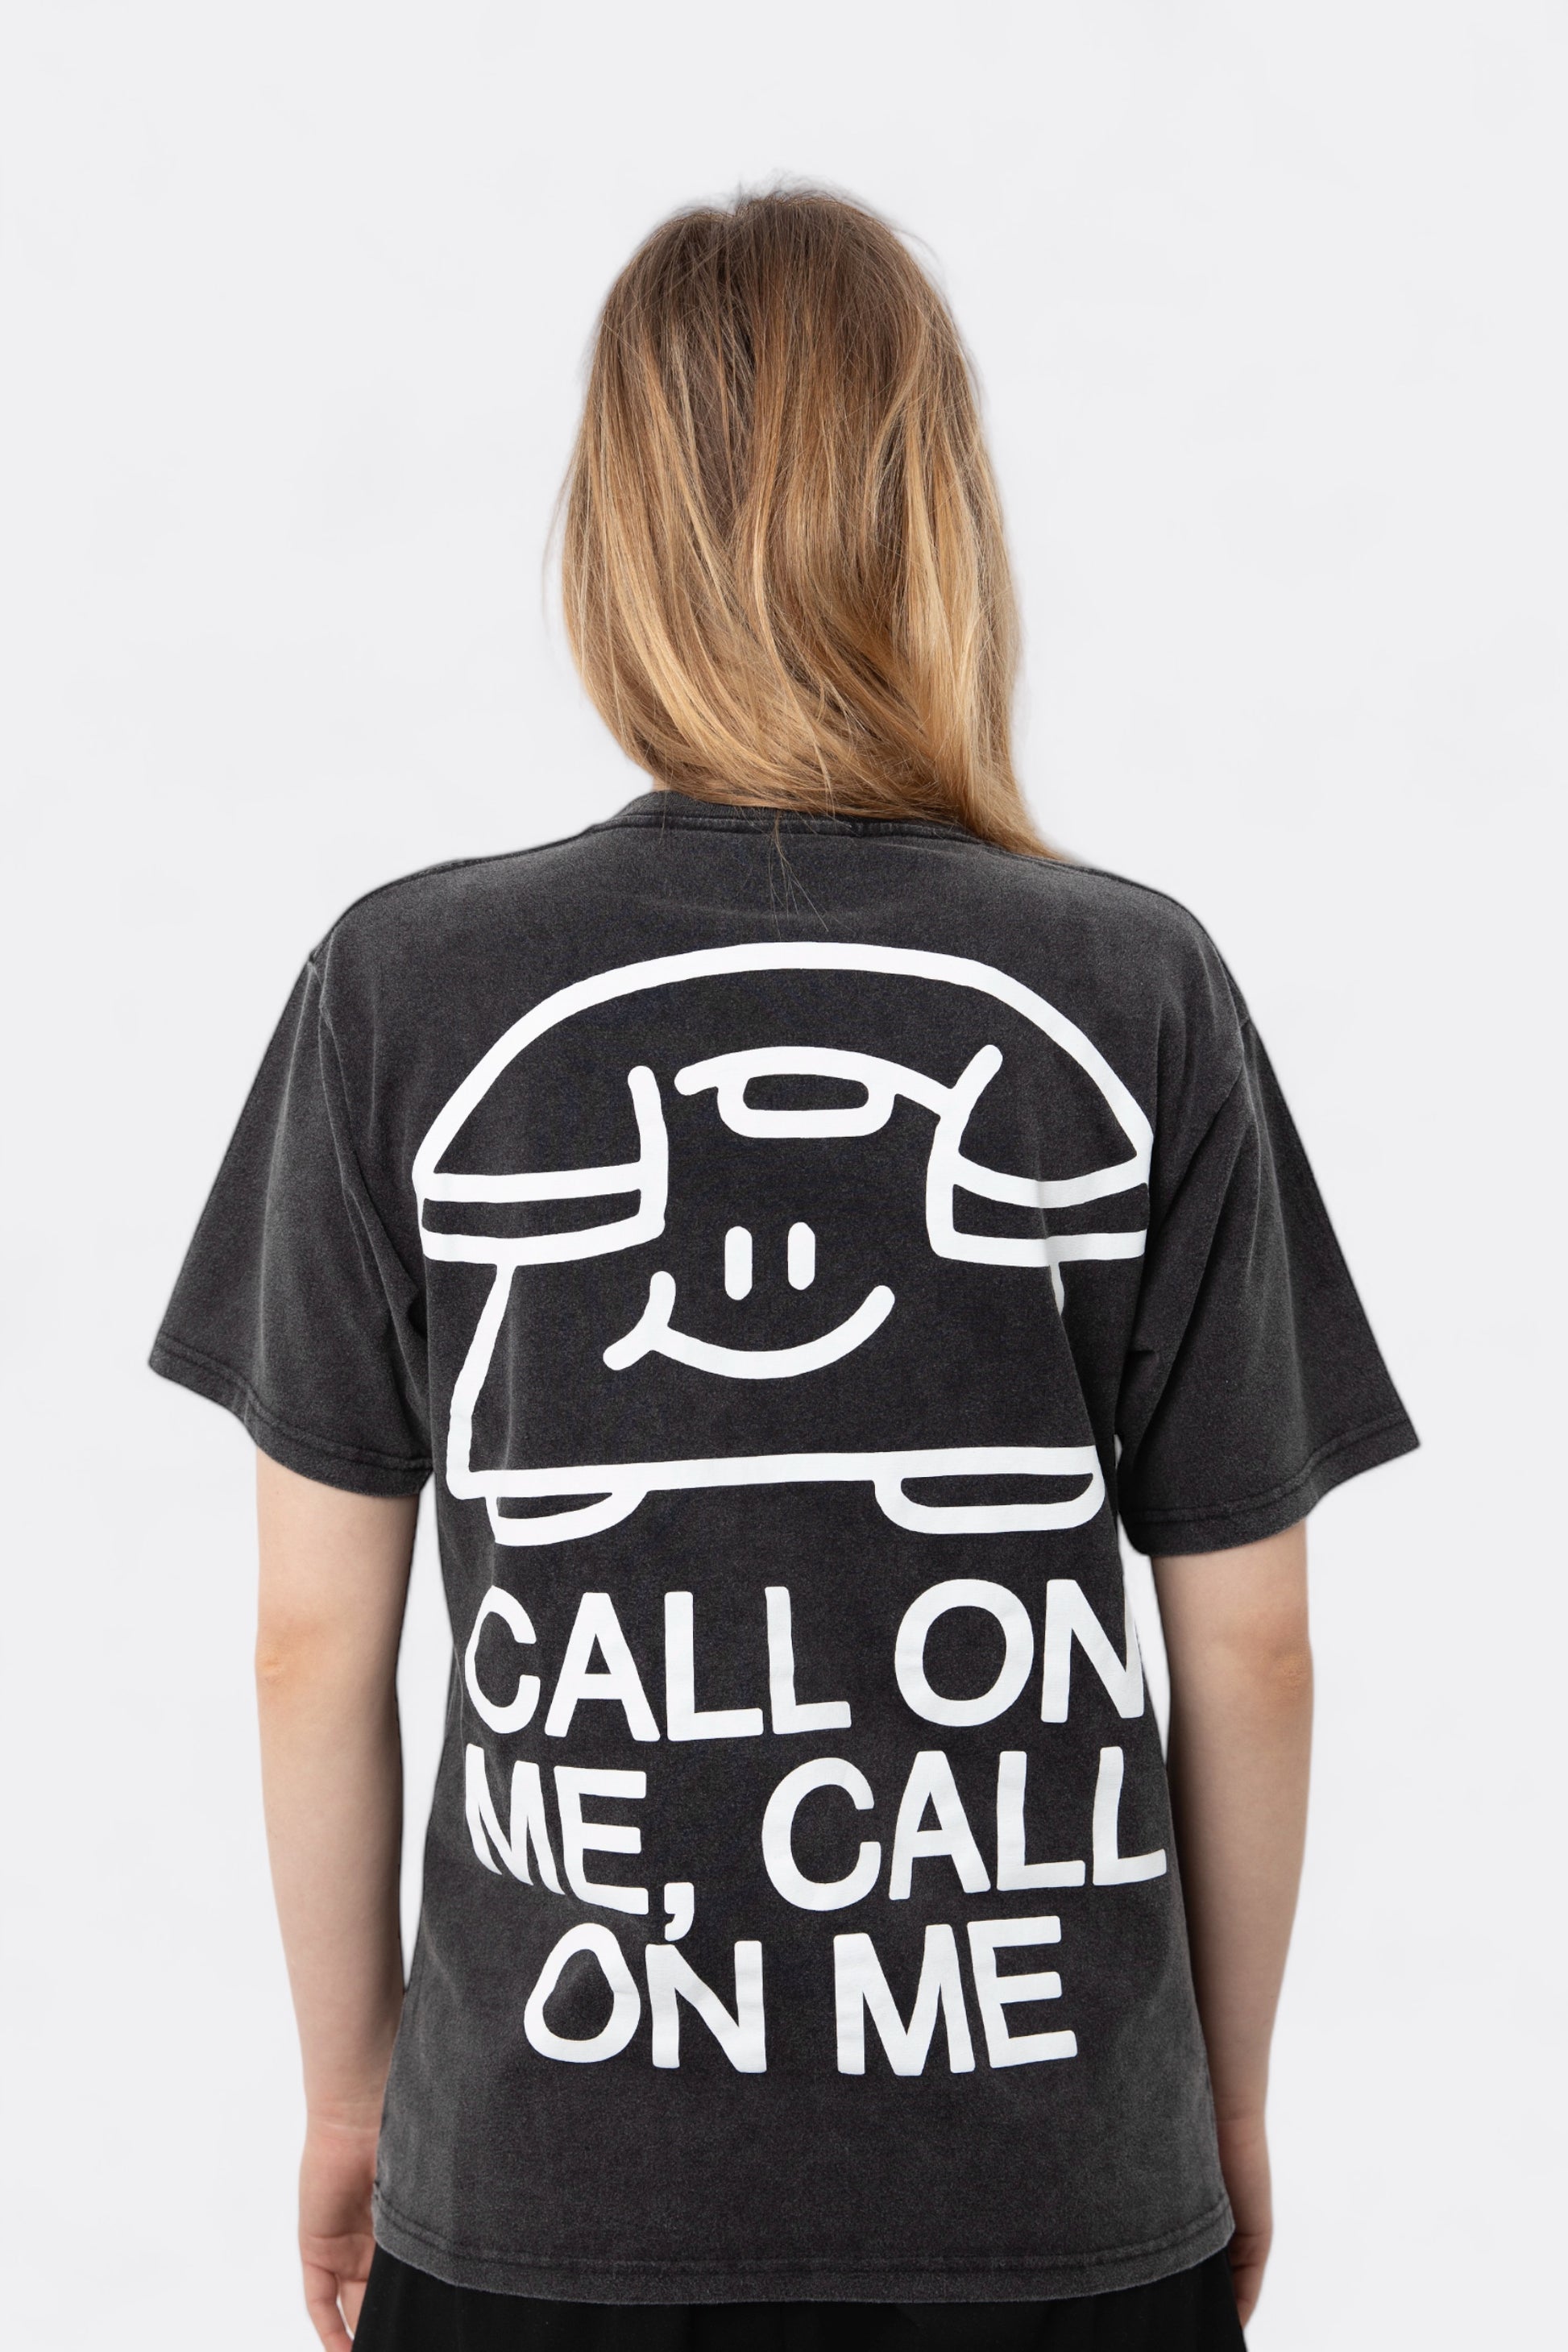 Public Possession - Call On Me T-Shirt (Pebble Black)